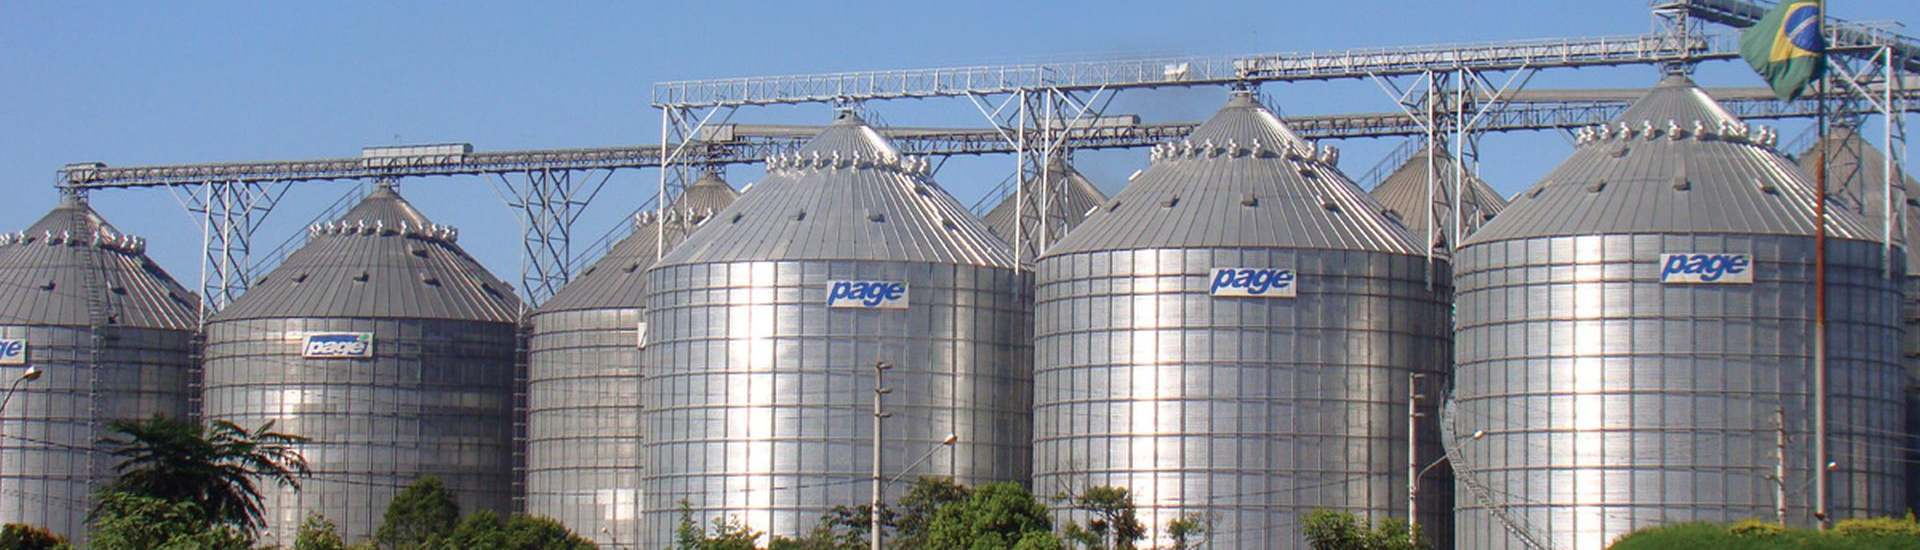 Análise da eficiência das unidades armazenadoras de grãos: a proposição de um indicador de desempenho a partir da análise envoltória de dados (DEA) 